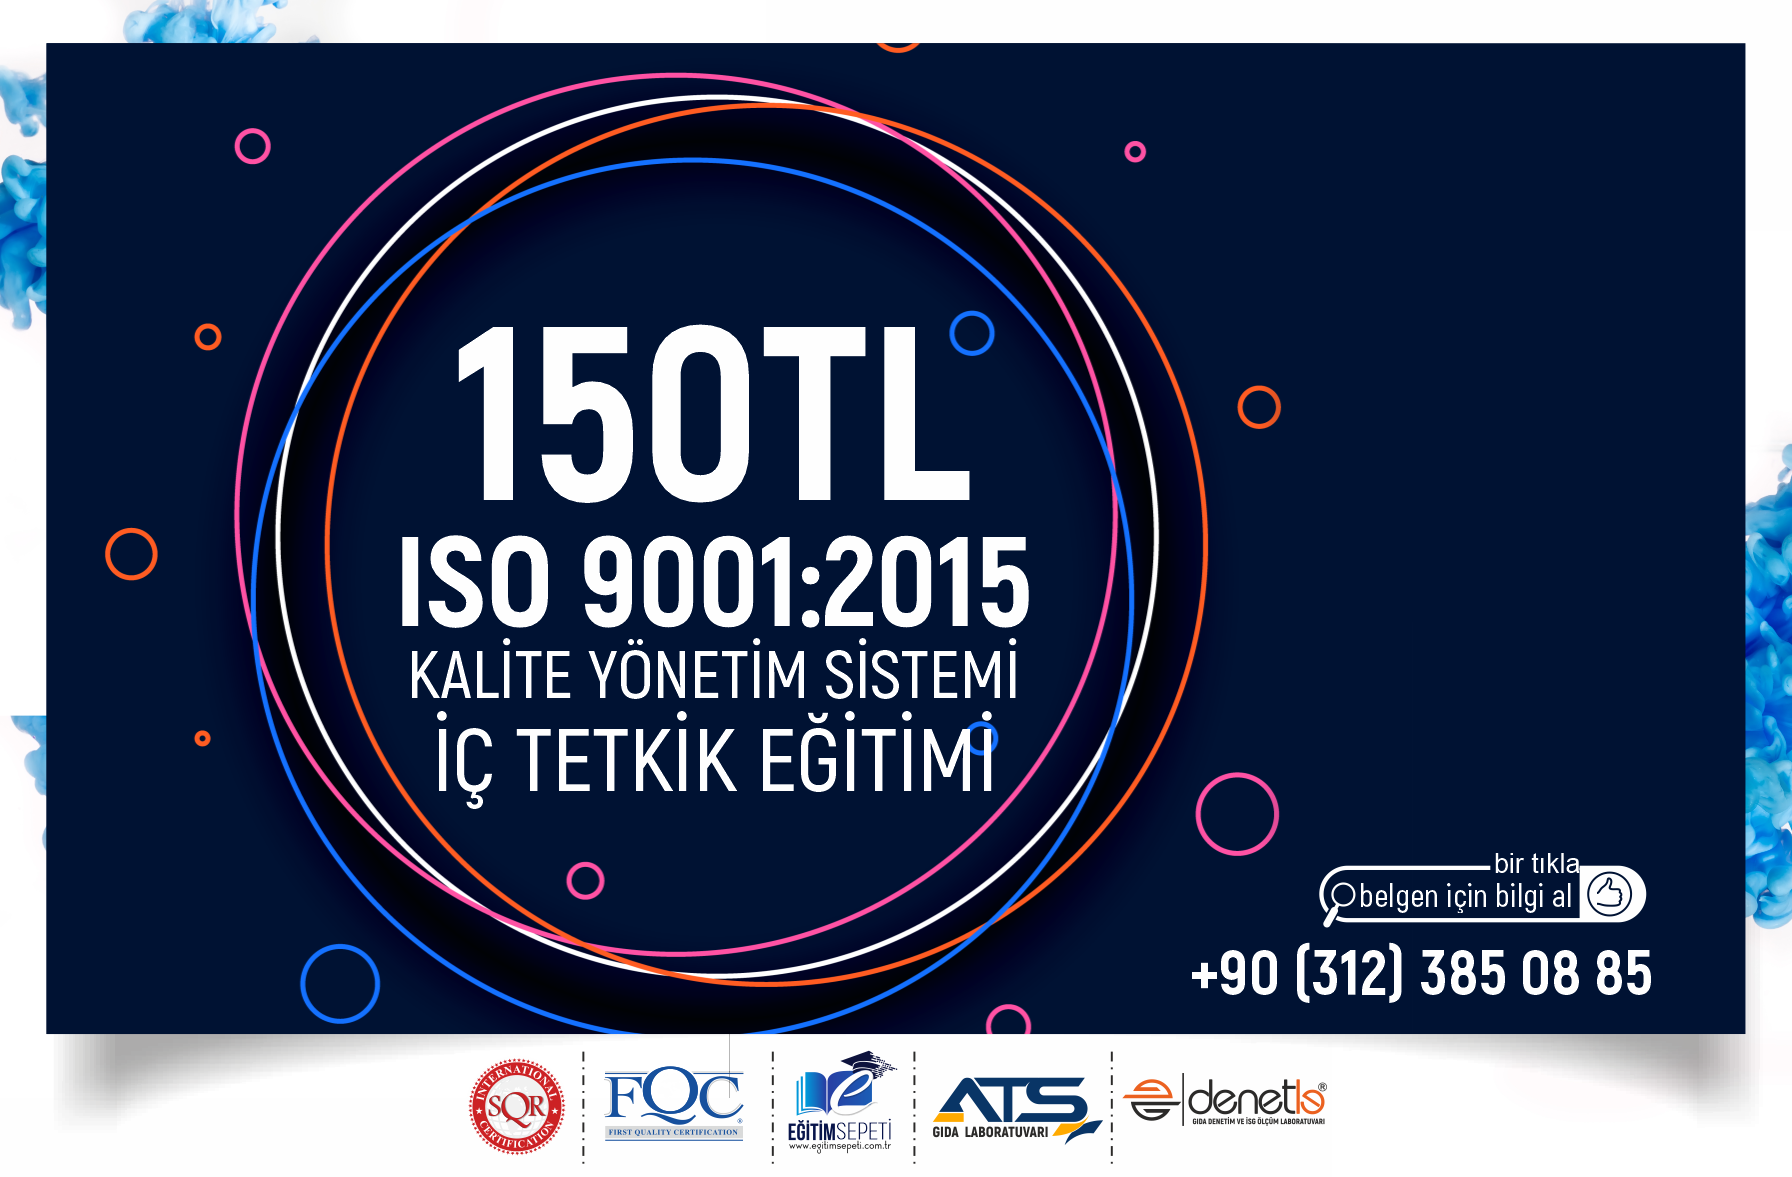 ISO 9001:2015 KALÄ°TE YÃ–NETÄ°M SÄ°STEMÄ° Ä°Ã‡ TETKÄ°K EÄžÄ°TÄ°MÄ°